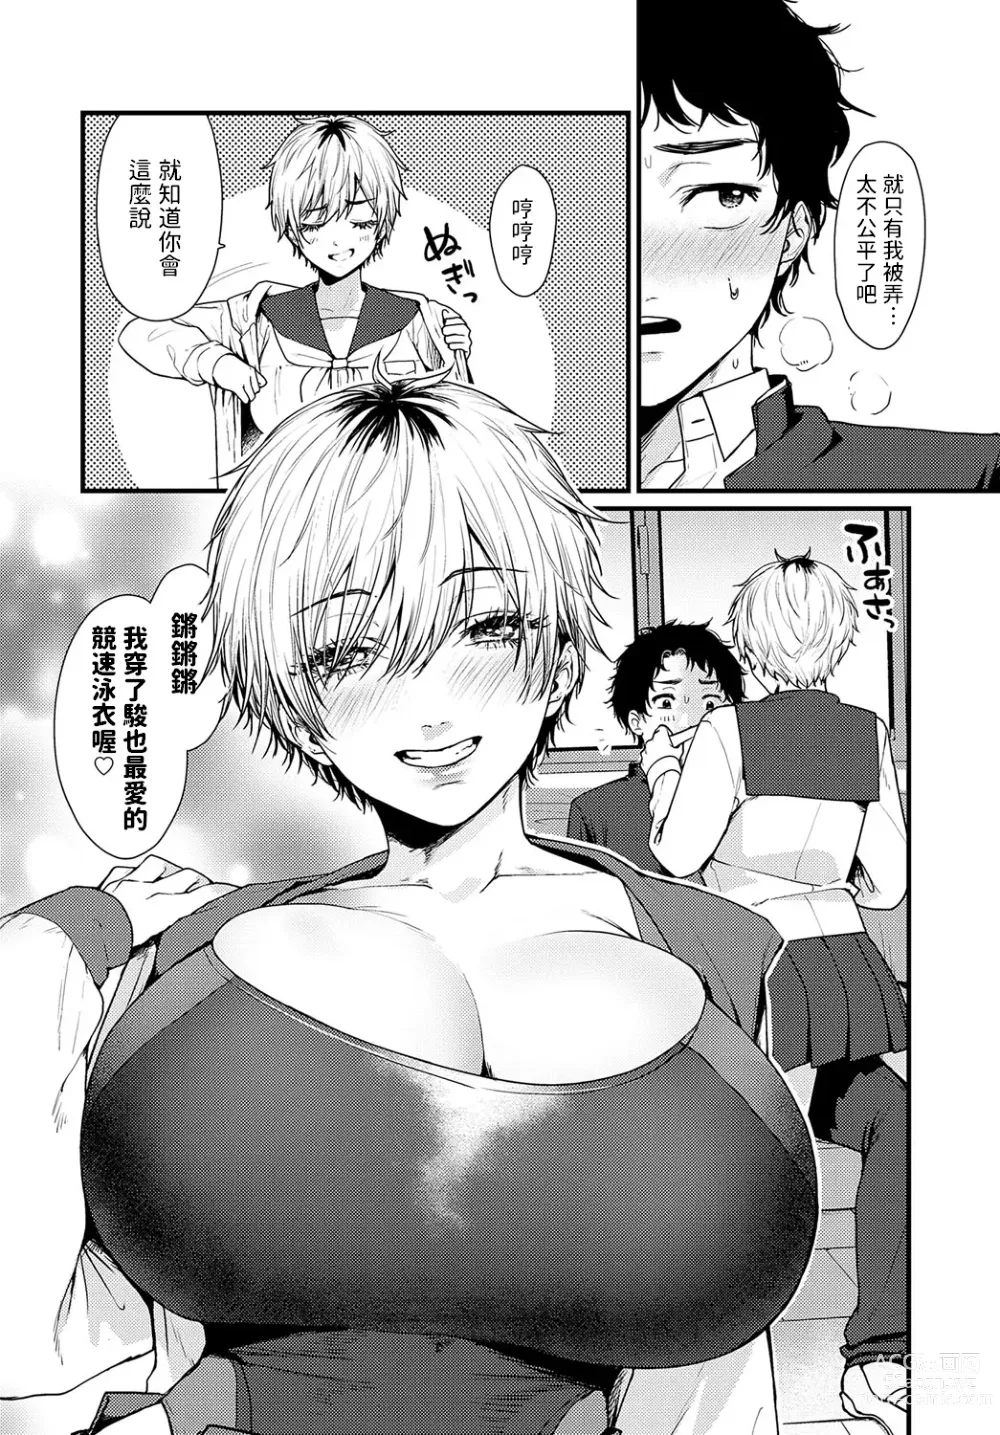 Page 8 of manga Misshitsu Swimsuit